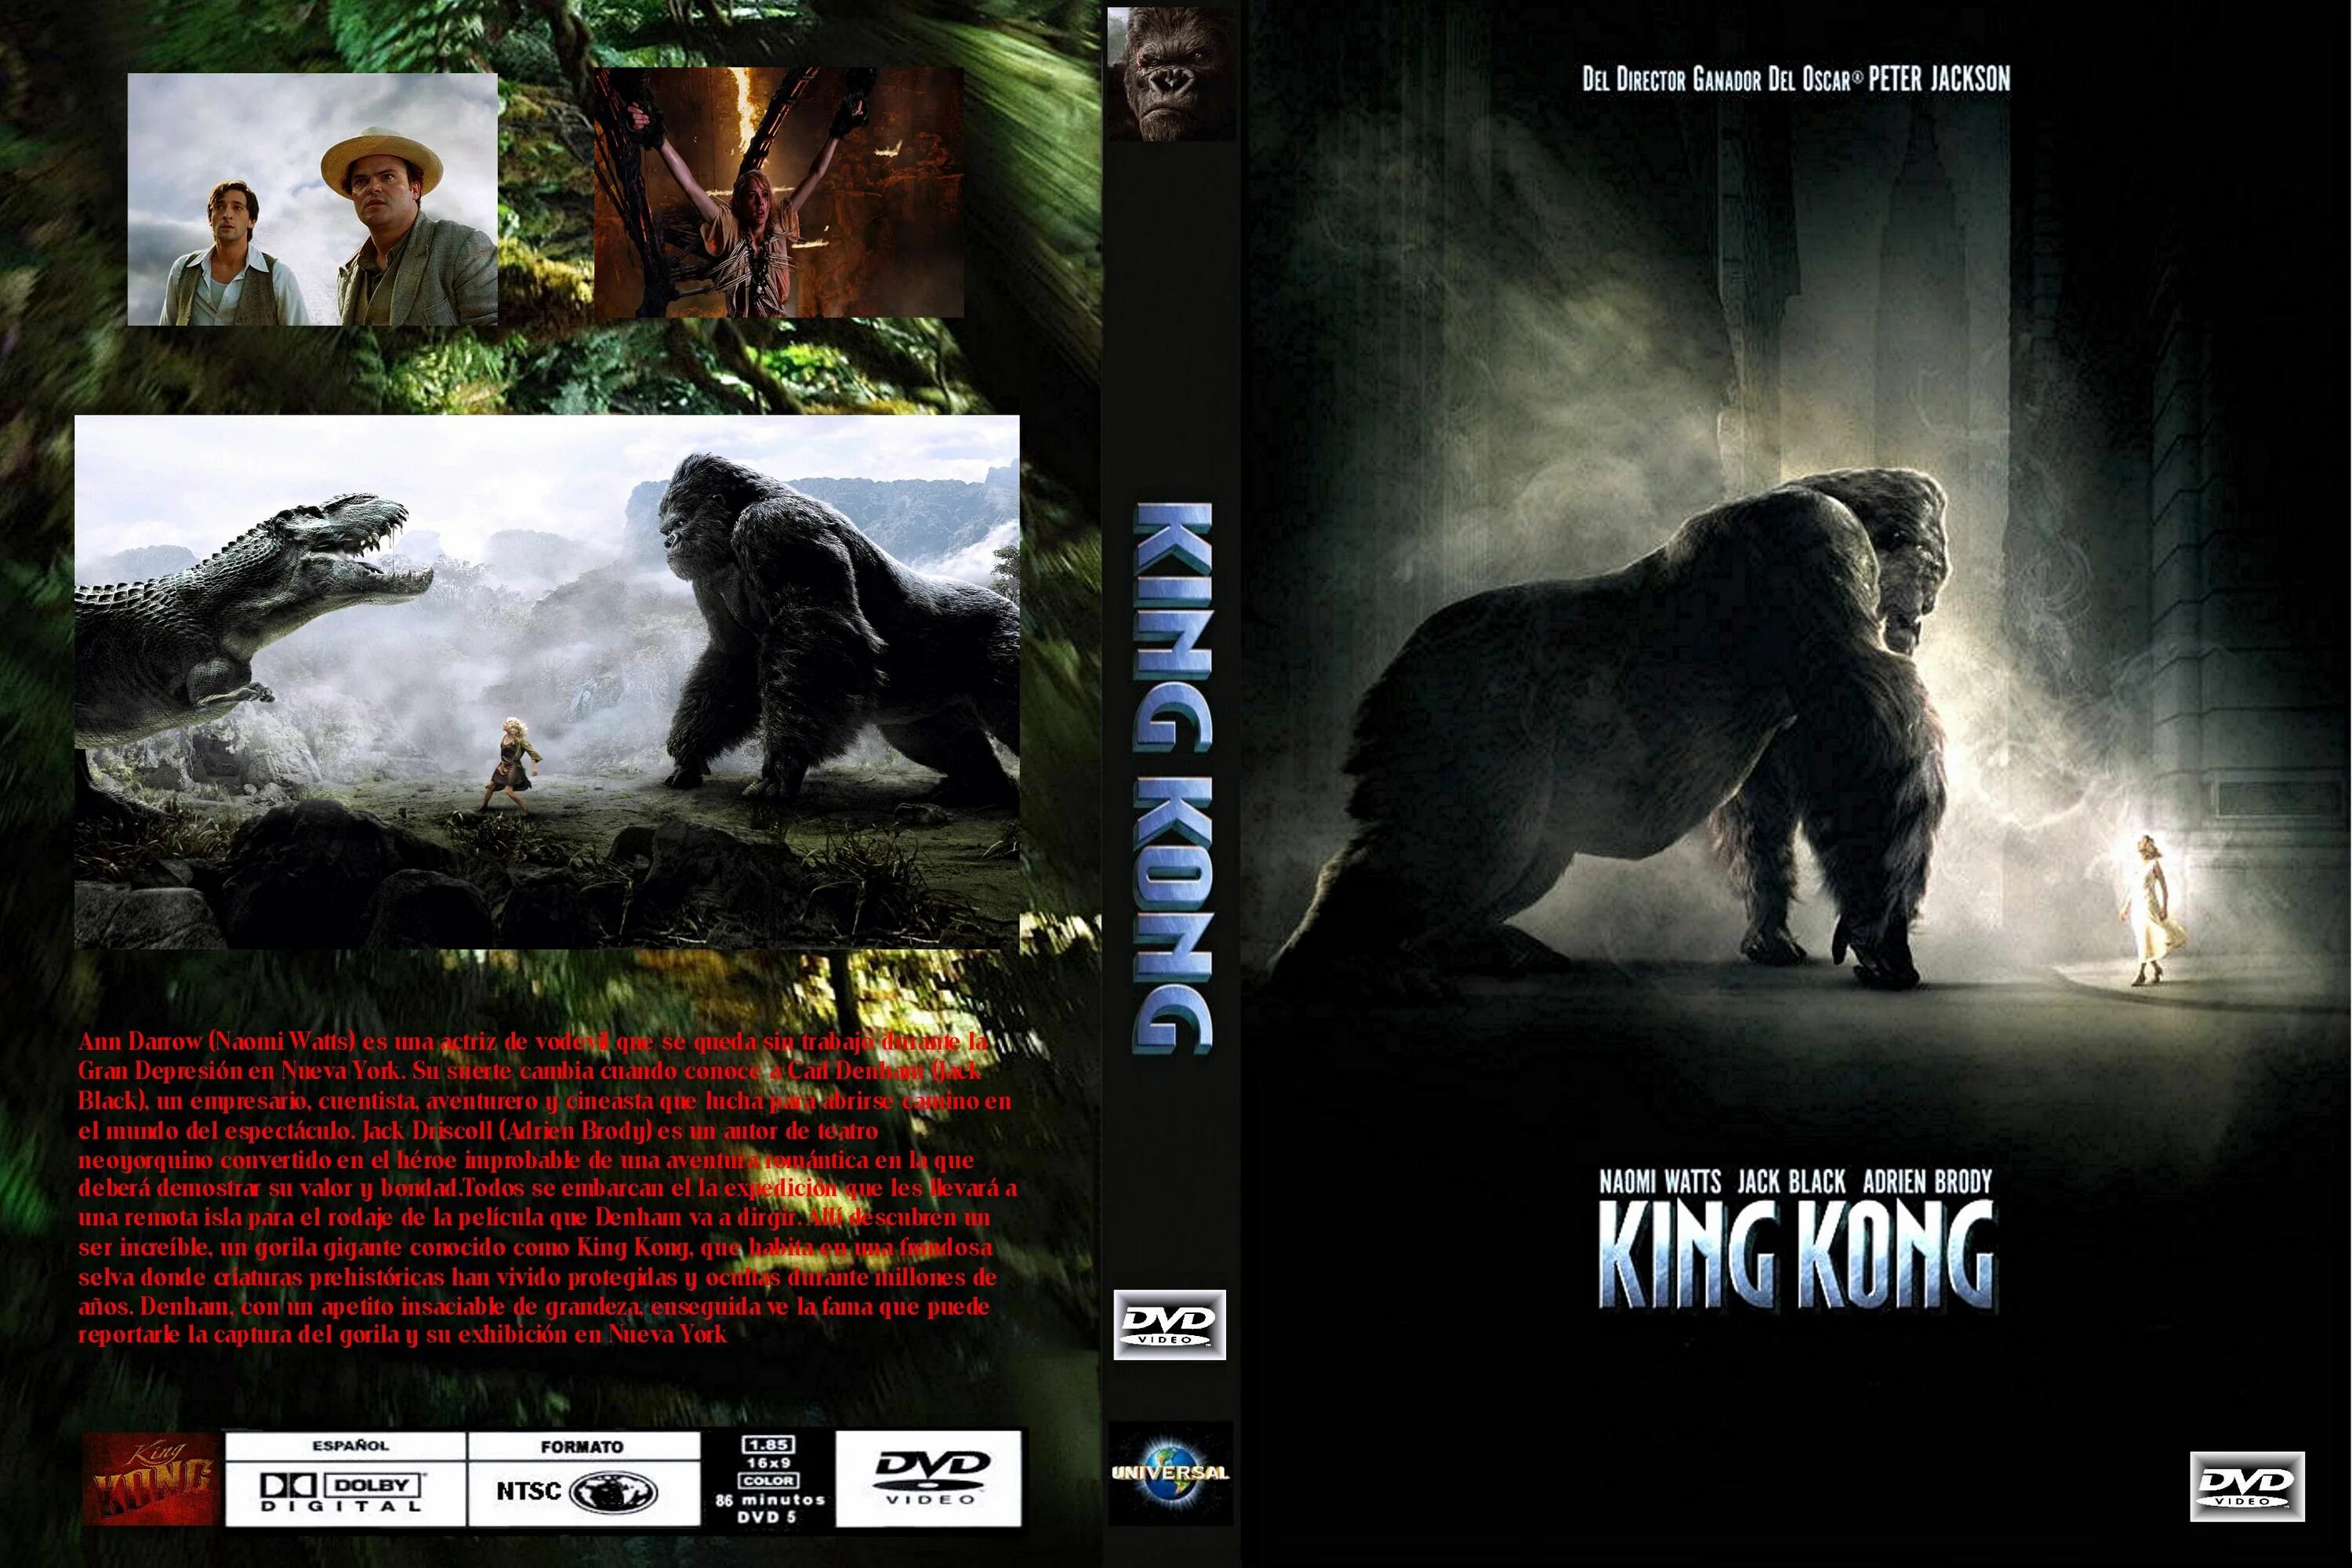 Кинг Конг 2005 обложка. Кинг Конг 2005 Cover обложка. Кинг Конг King Kong (2005) Cover. Кинг Конг. 2005 DVD Cover обложка.